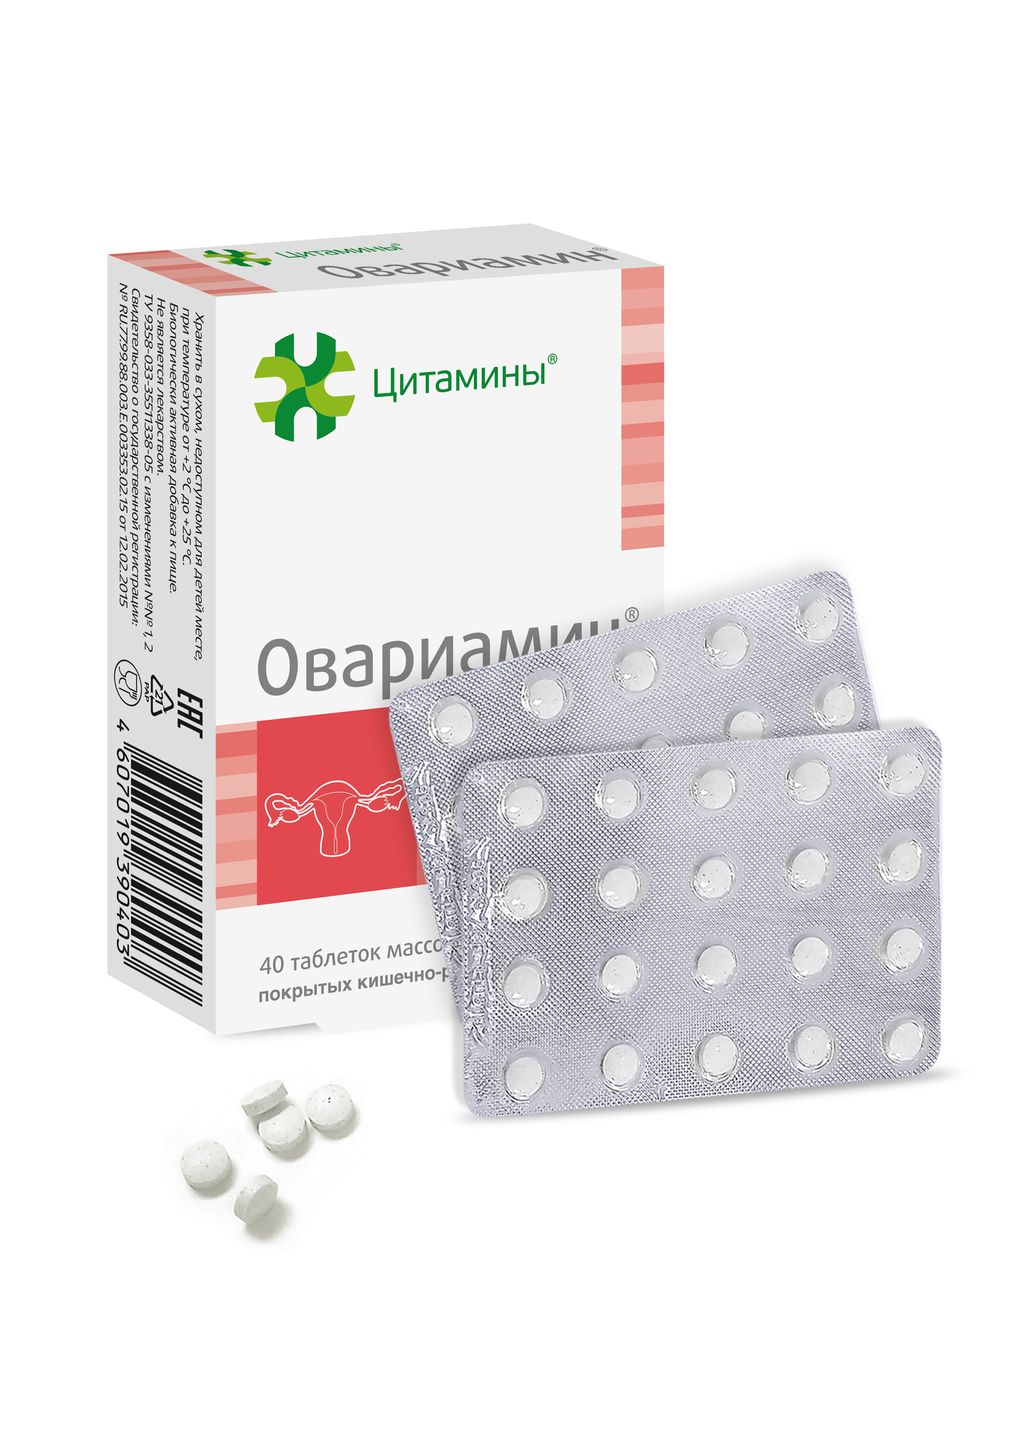 Овариамин, 155 мг, таблетки, покрытые кишечнорастворимой оболочкой, 40 шт.